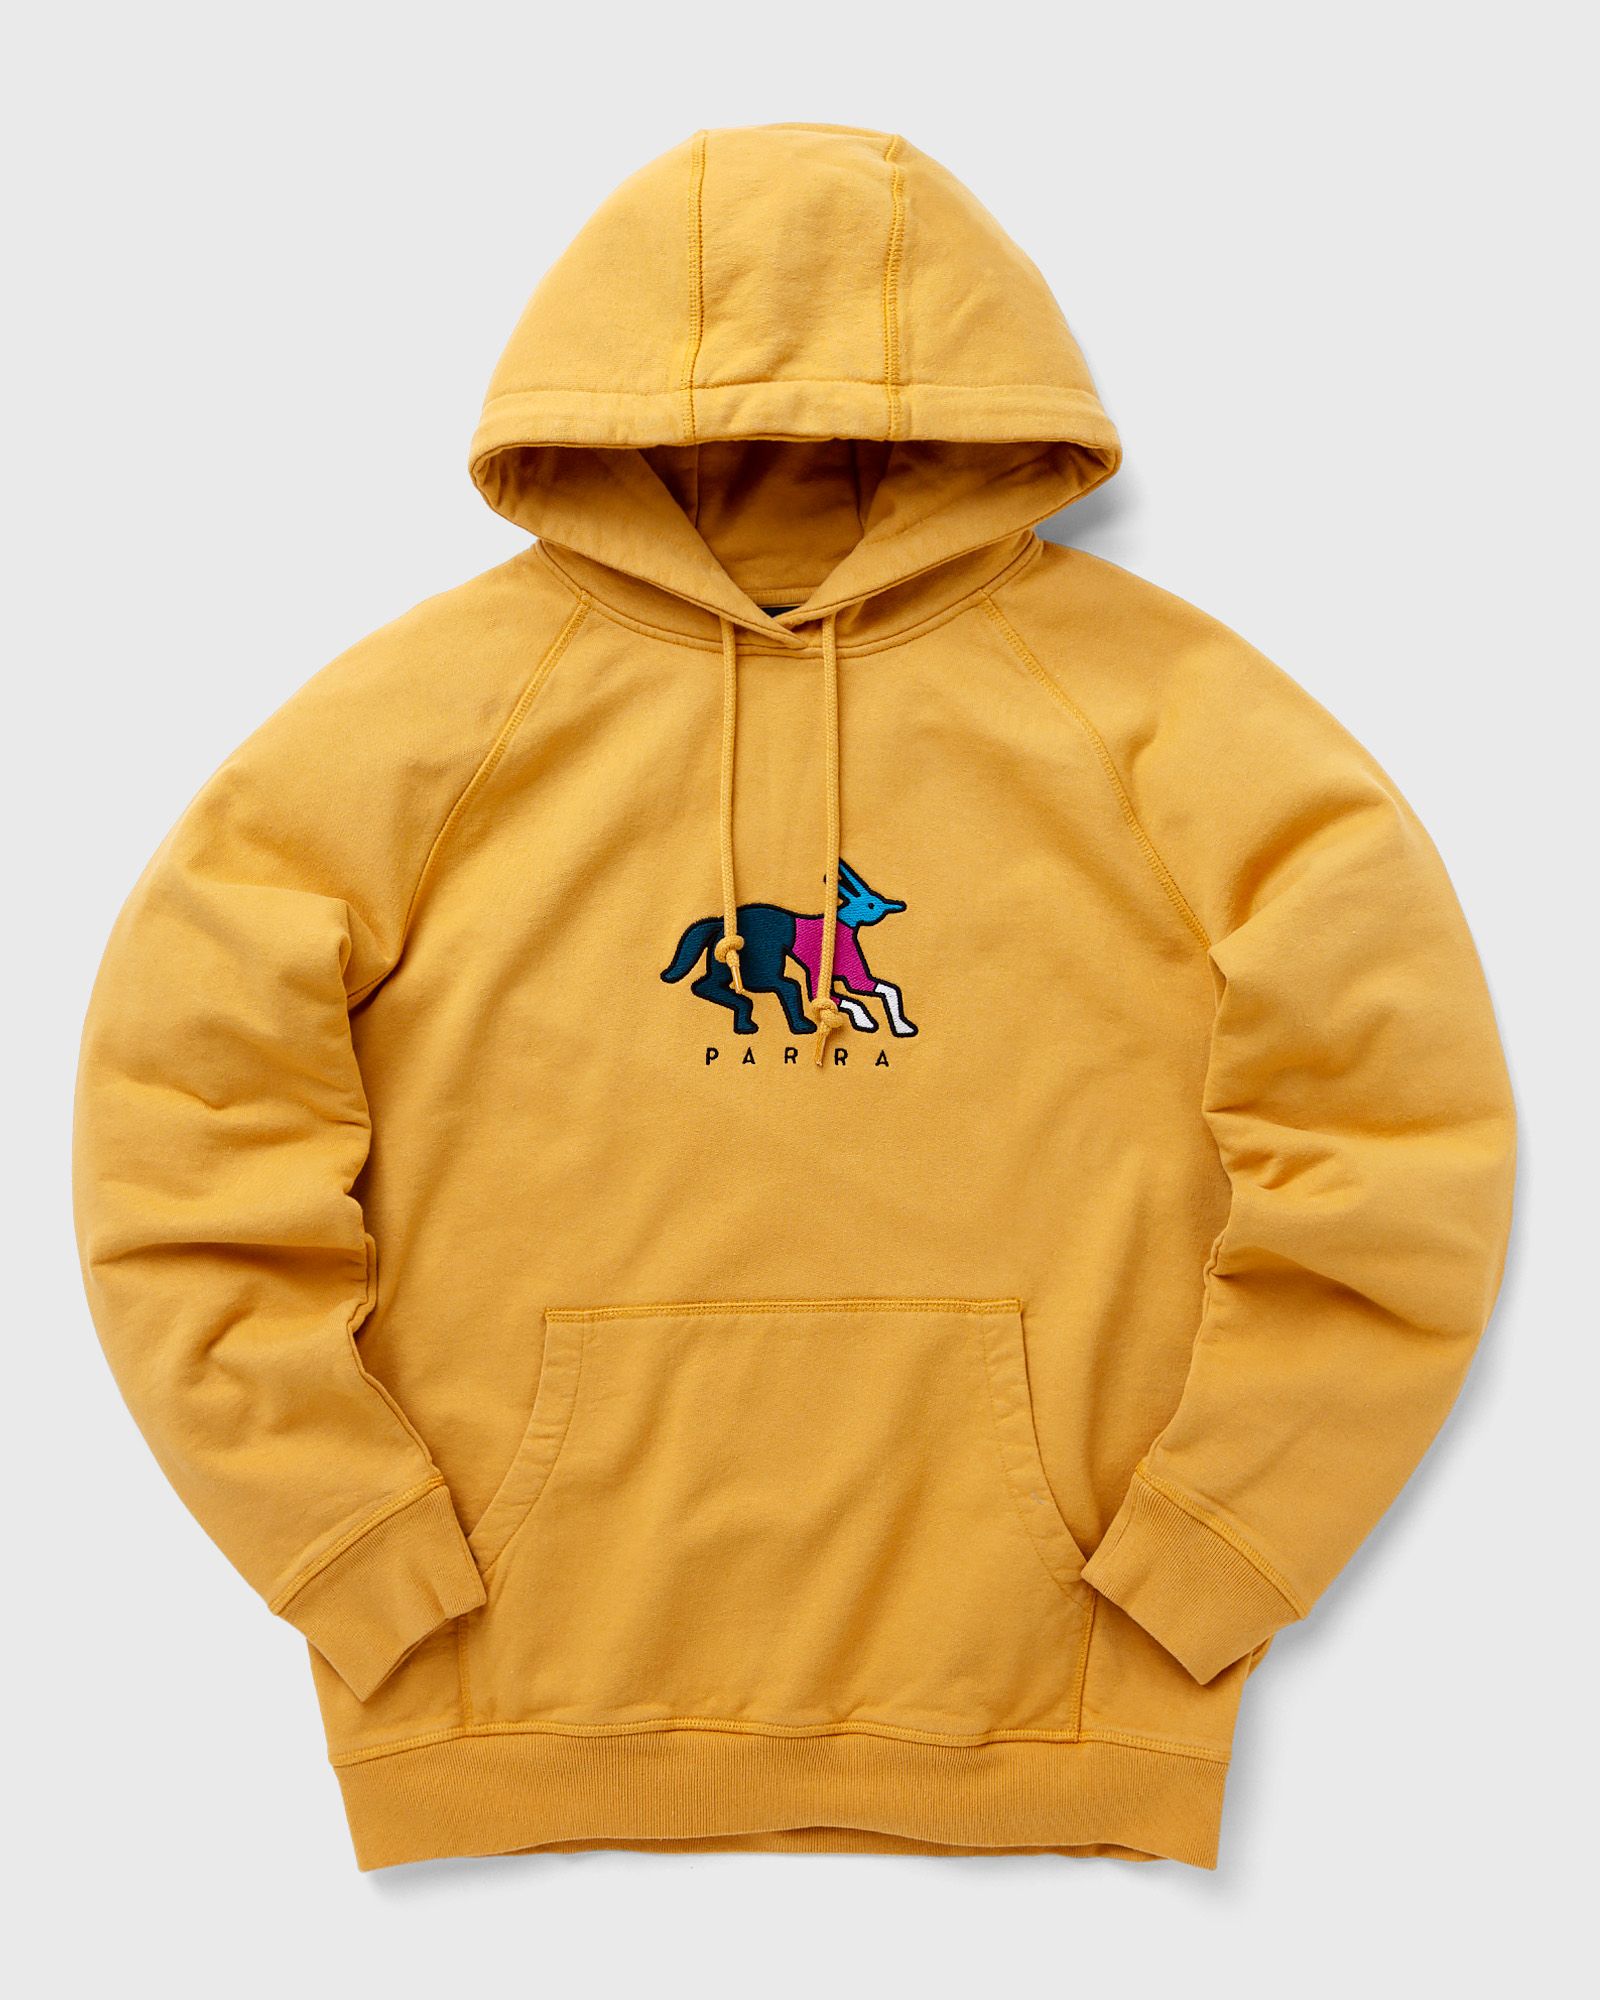 By Parra - anxious dog hooded sweatshirt men hoodies yellow in größe:s